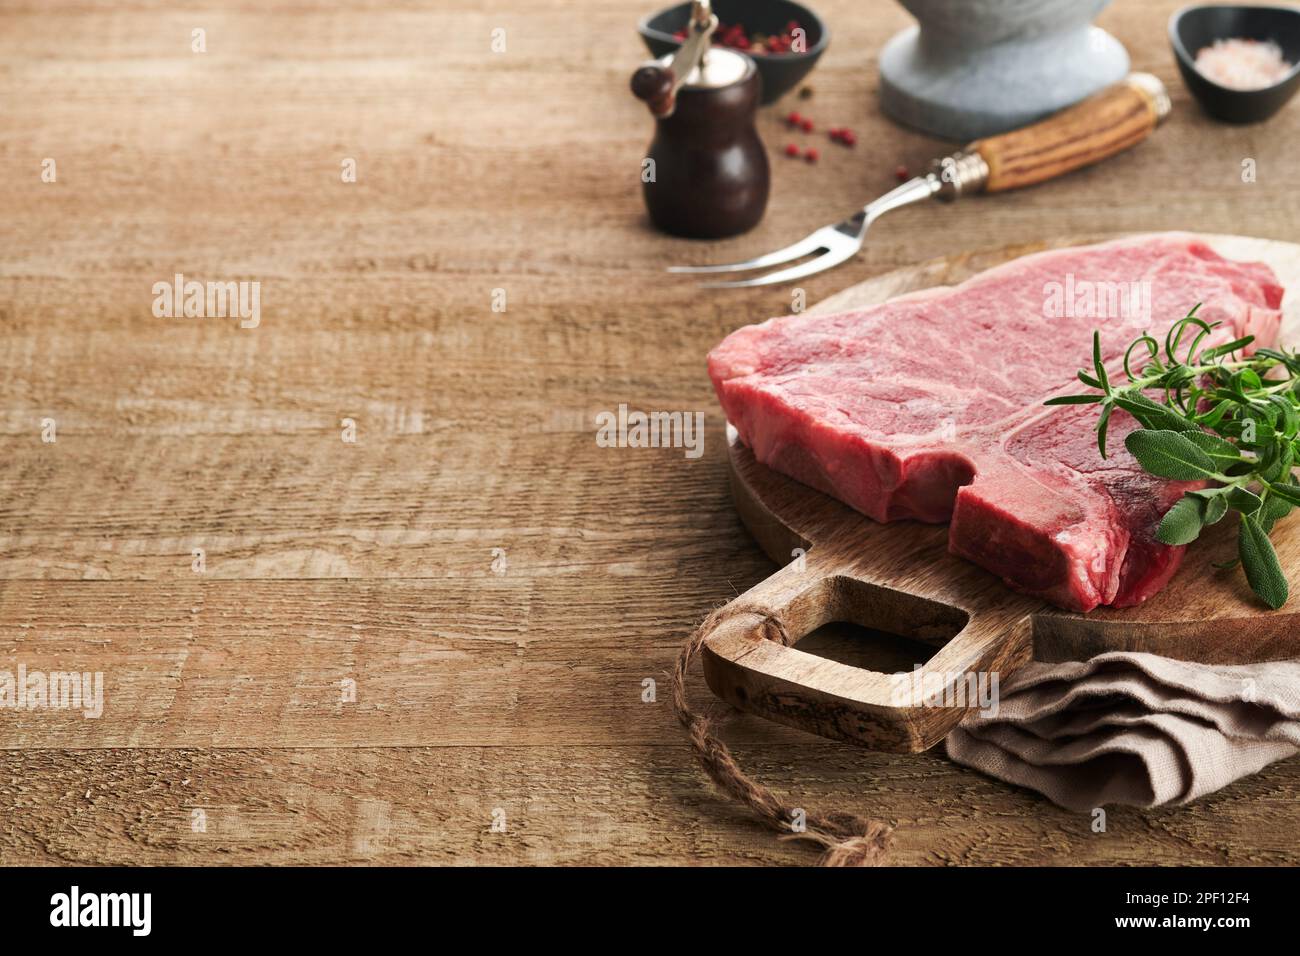 Dickes rohes T-Bone Steak. Trocken gereiftes rohes T-Bone- oder Porterhouse-Rindfleisch-Steak mit Kräutern und Salz auf dunklem Hintergrund. Selektiver Fokus und Kopierbereich. Stockfoto